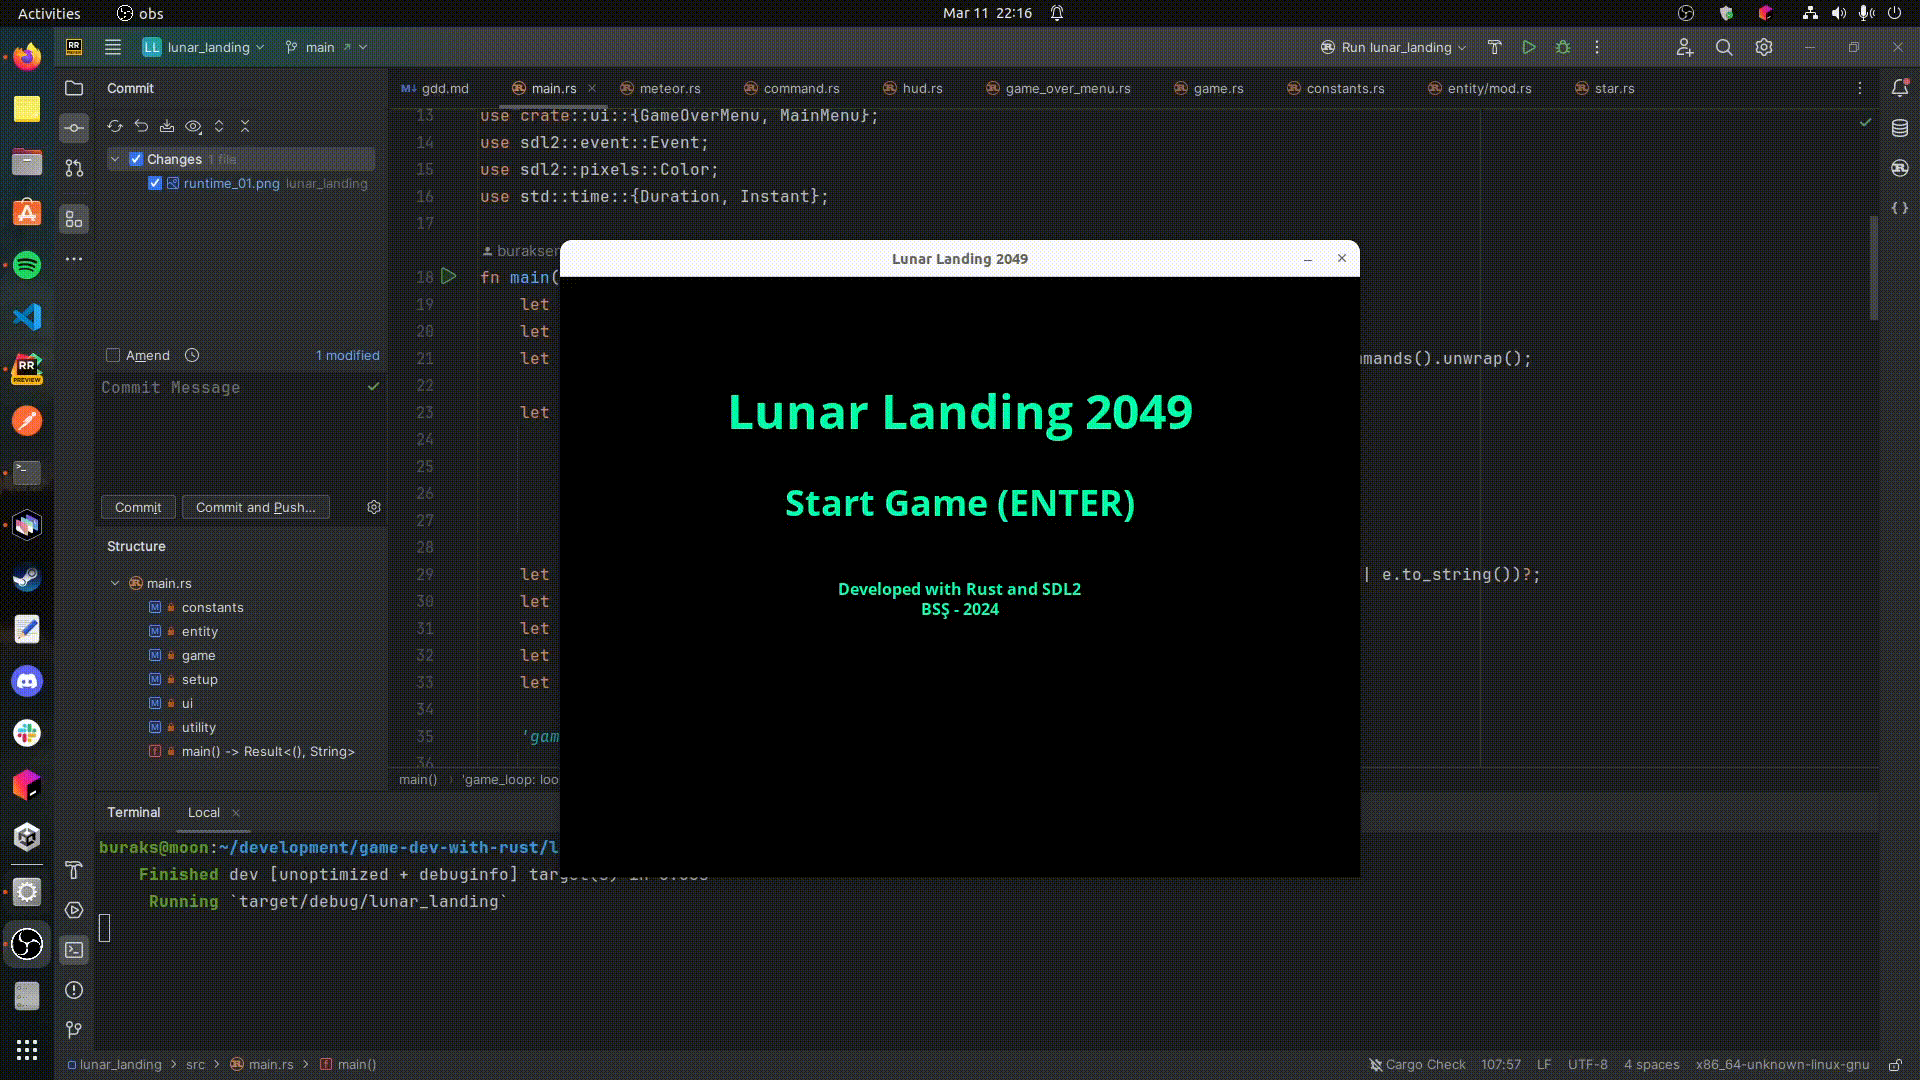 Lunar Landing 2029